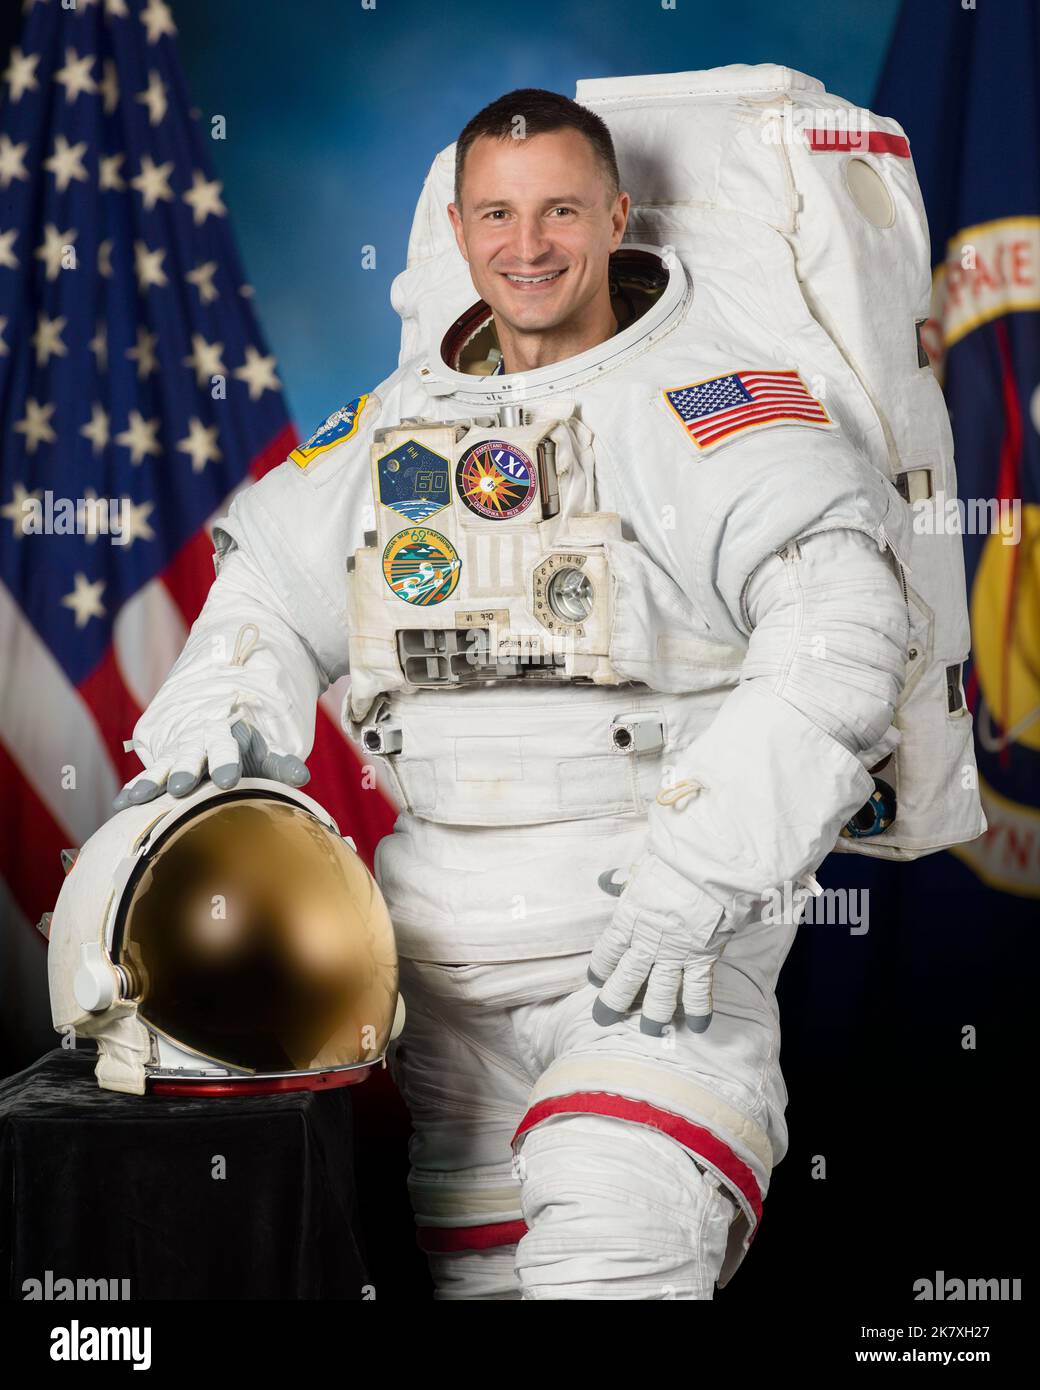 Offizielles Porträt des NASA-Astronauten Andrew Morgan in einem US-Weltraumspaziergang, auch bekannt als Extravehicular Mobility Unit (EMU). Offizielles NASA-Astronautenportrait in EMU - Expedition 57/58 Crew-Mitglied Drew Morgan Stockfoto